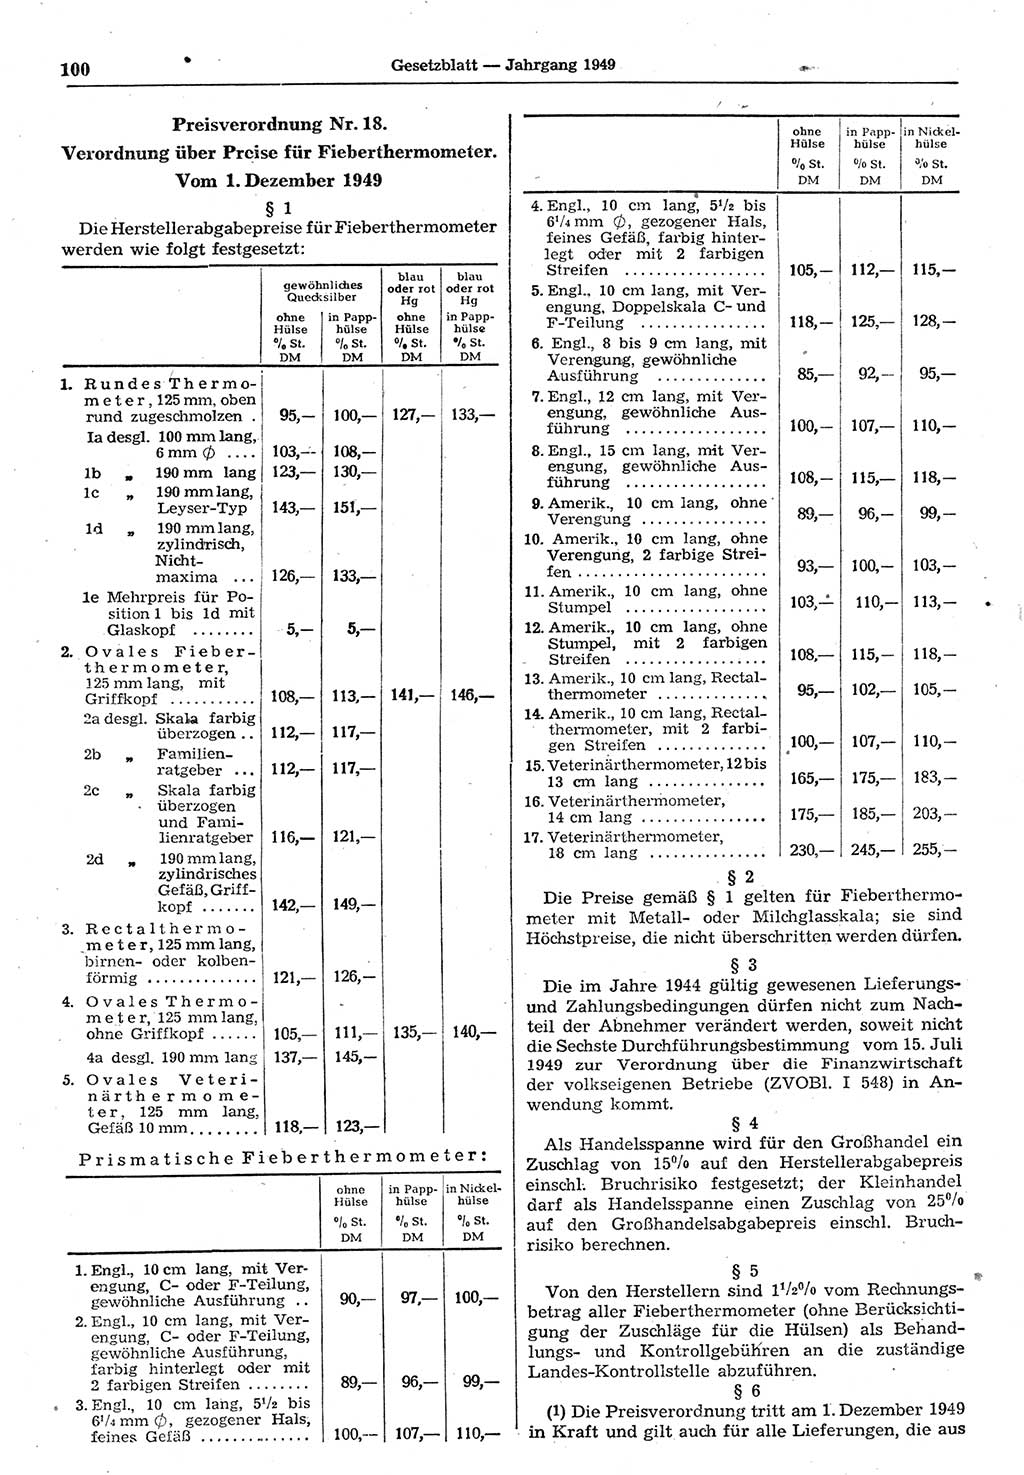 Gesetzblatt (GBl.) der Deutschen Demokratischen Republik (DDR) 1949, Seite 100 (GBl. DDR 1949, S. 100)